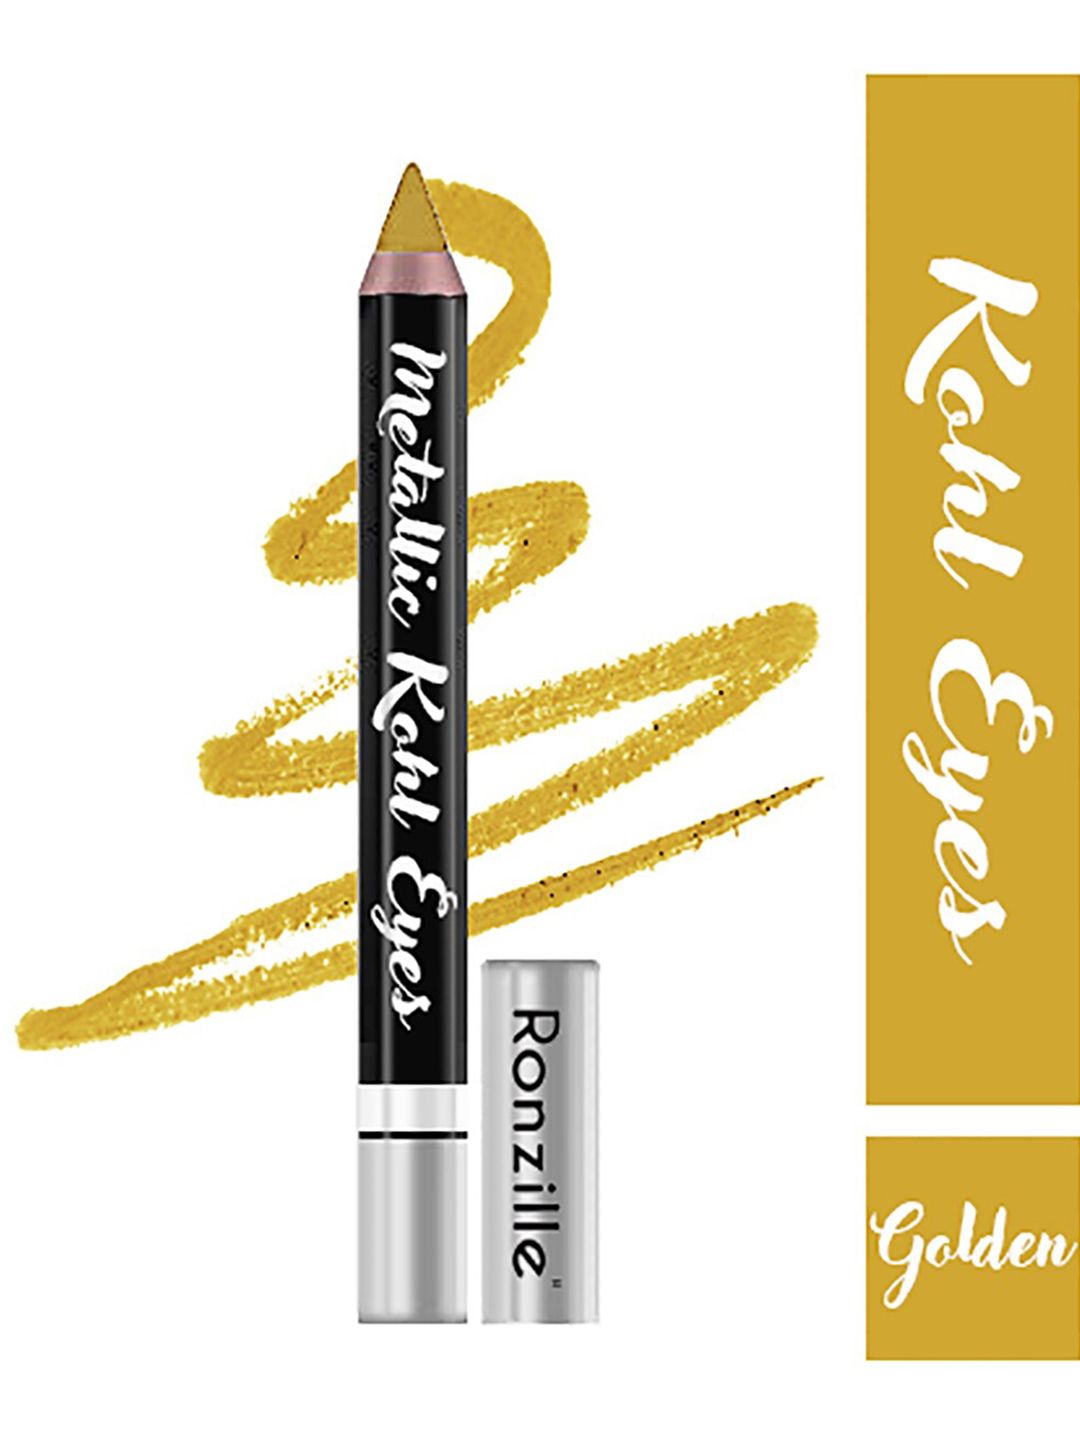 Ronzille Metallic Kohl Pencil Kajal Eyeliner Eyeshadow-Golden Price in India